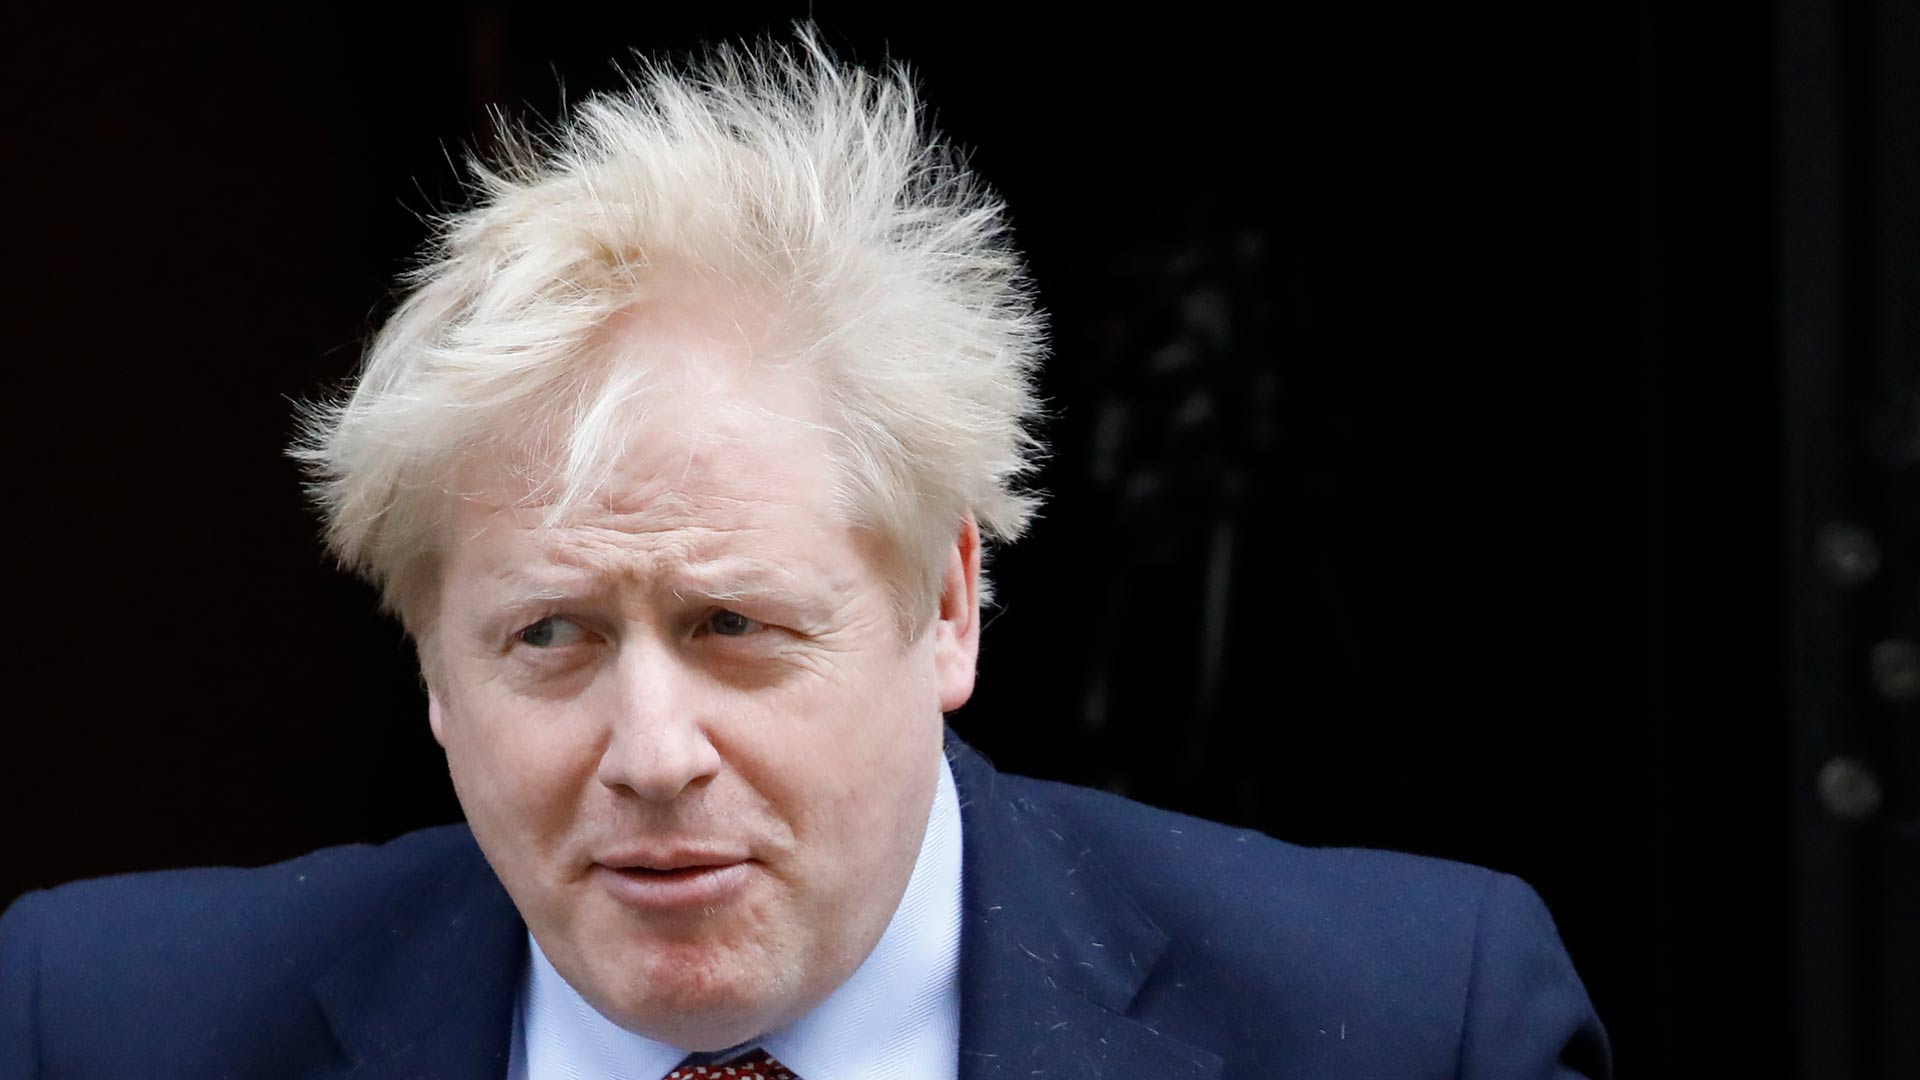 Boris Johnson da positivo en coronavirus con "síntomas leves"